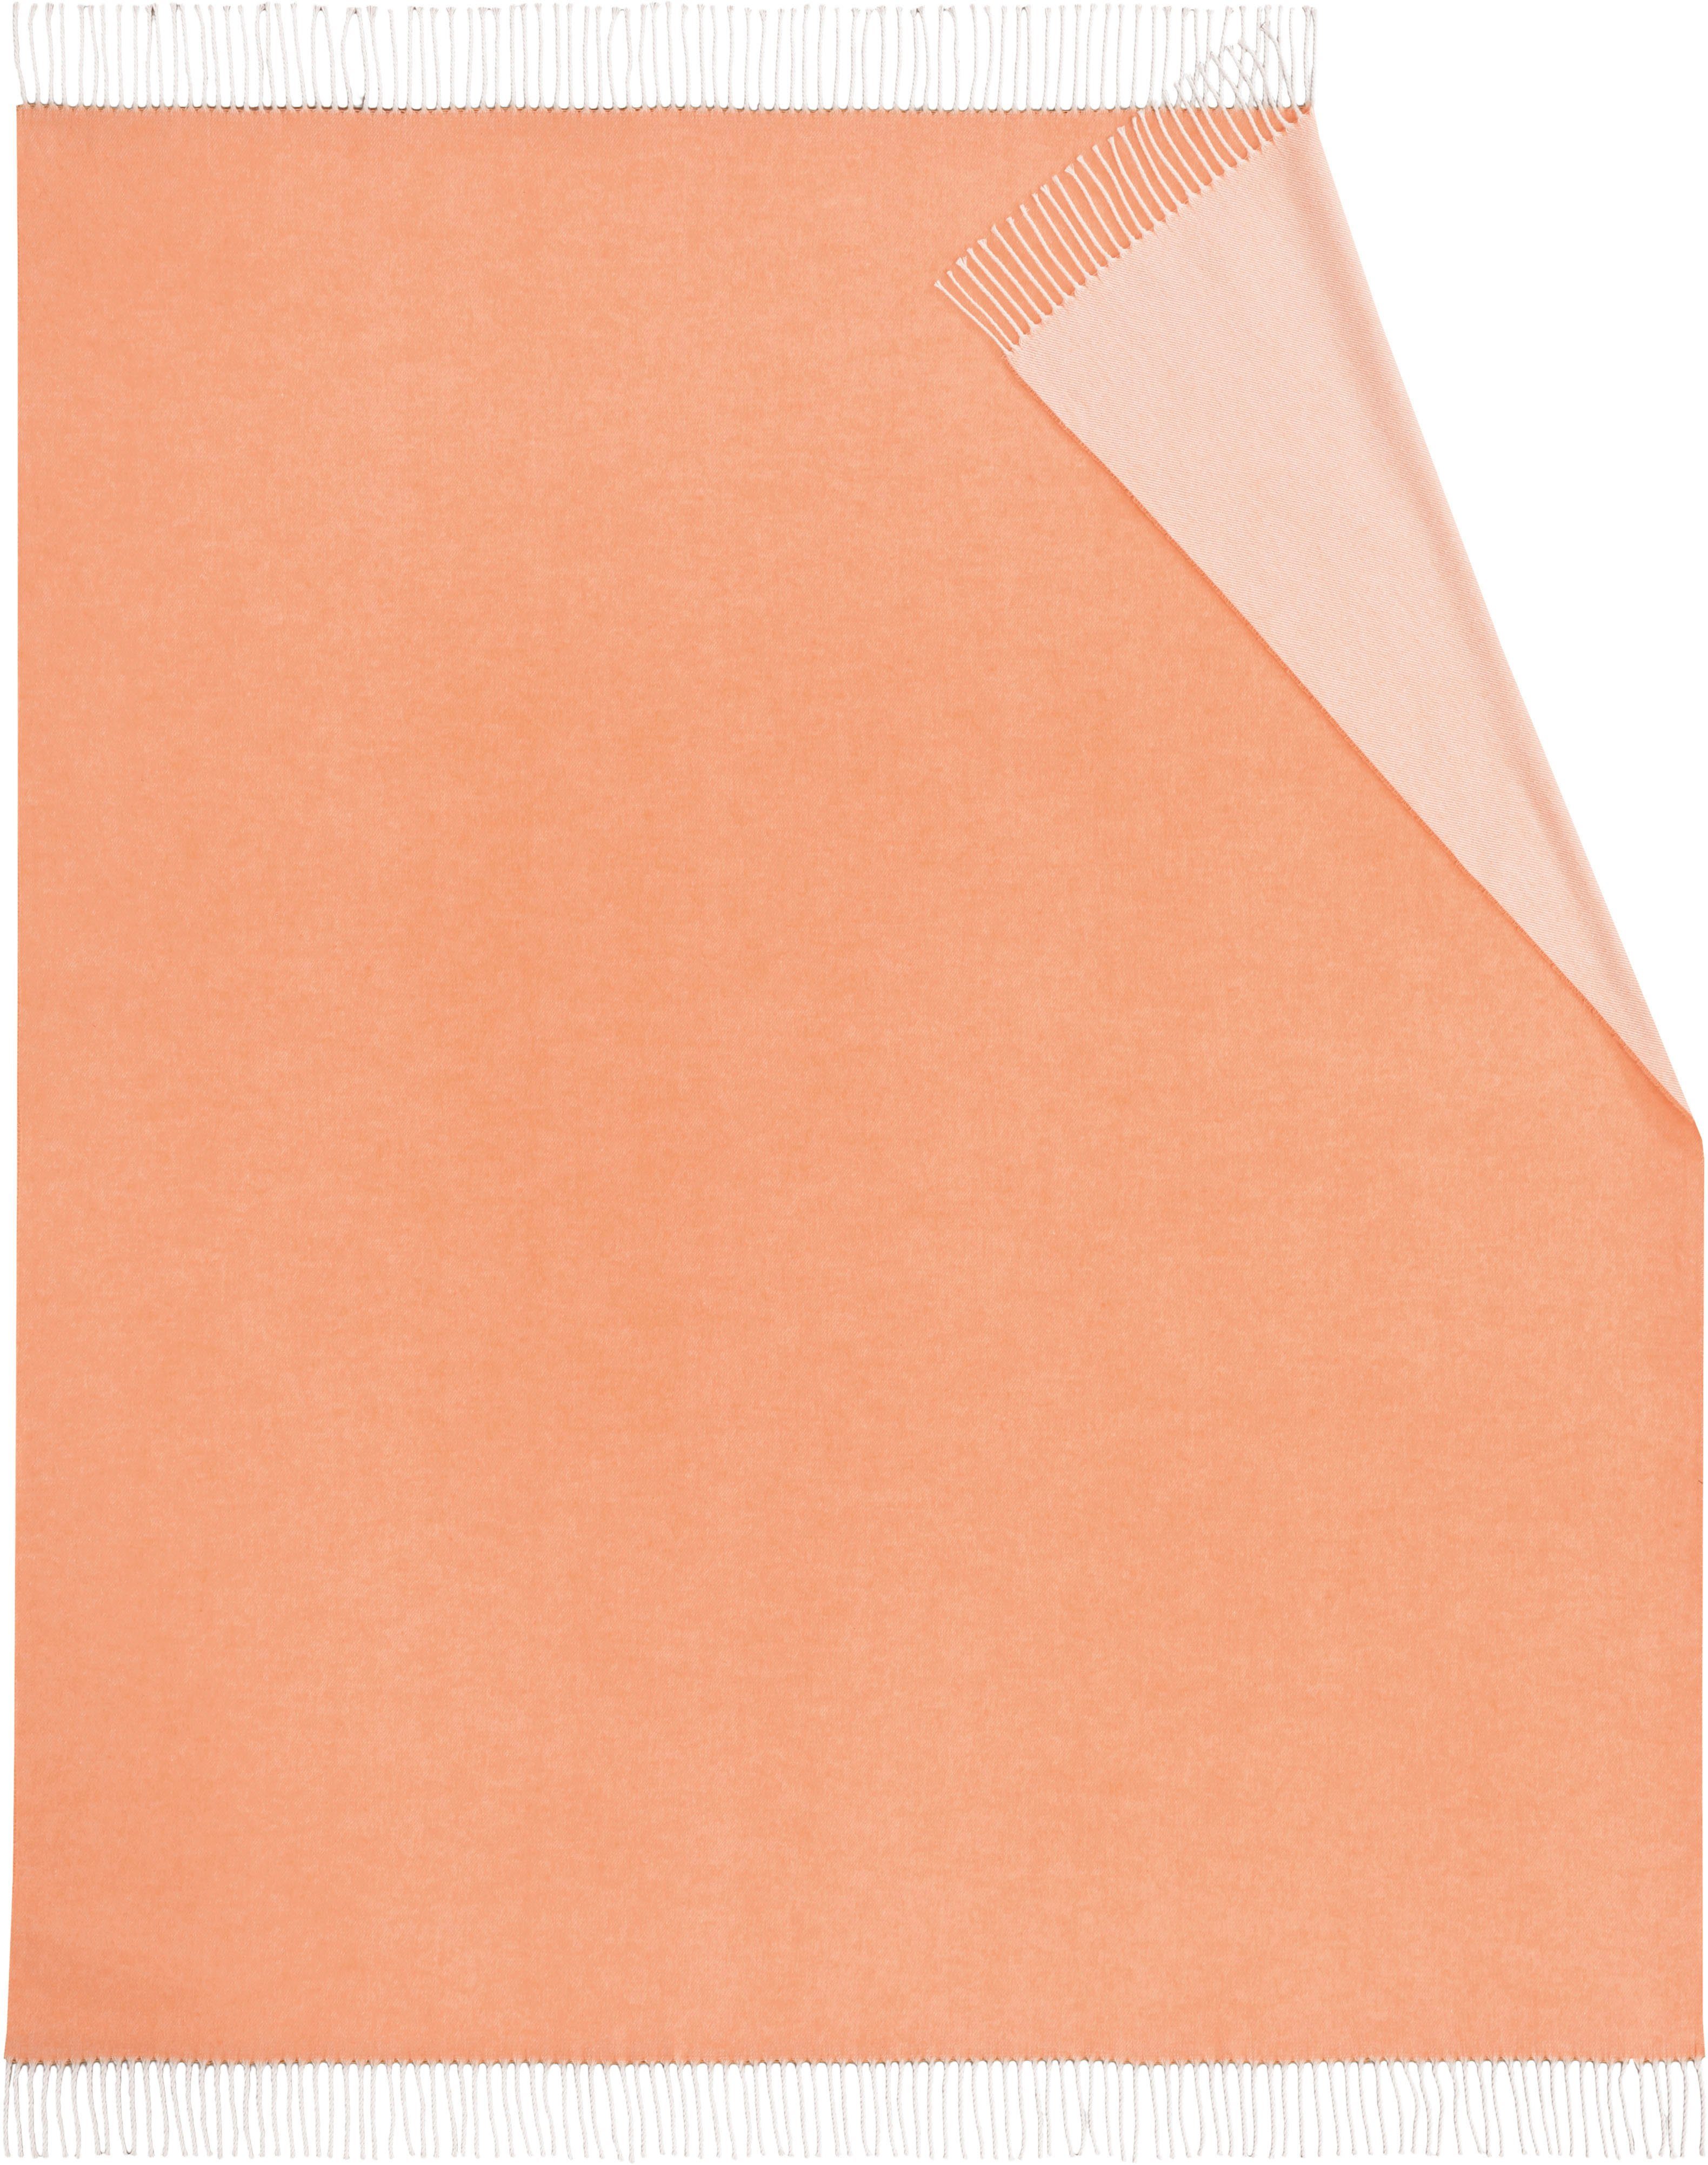 orange Kuscheldecke Plaid mit Biederlack, Uni-Farben, frischen Twill,